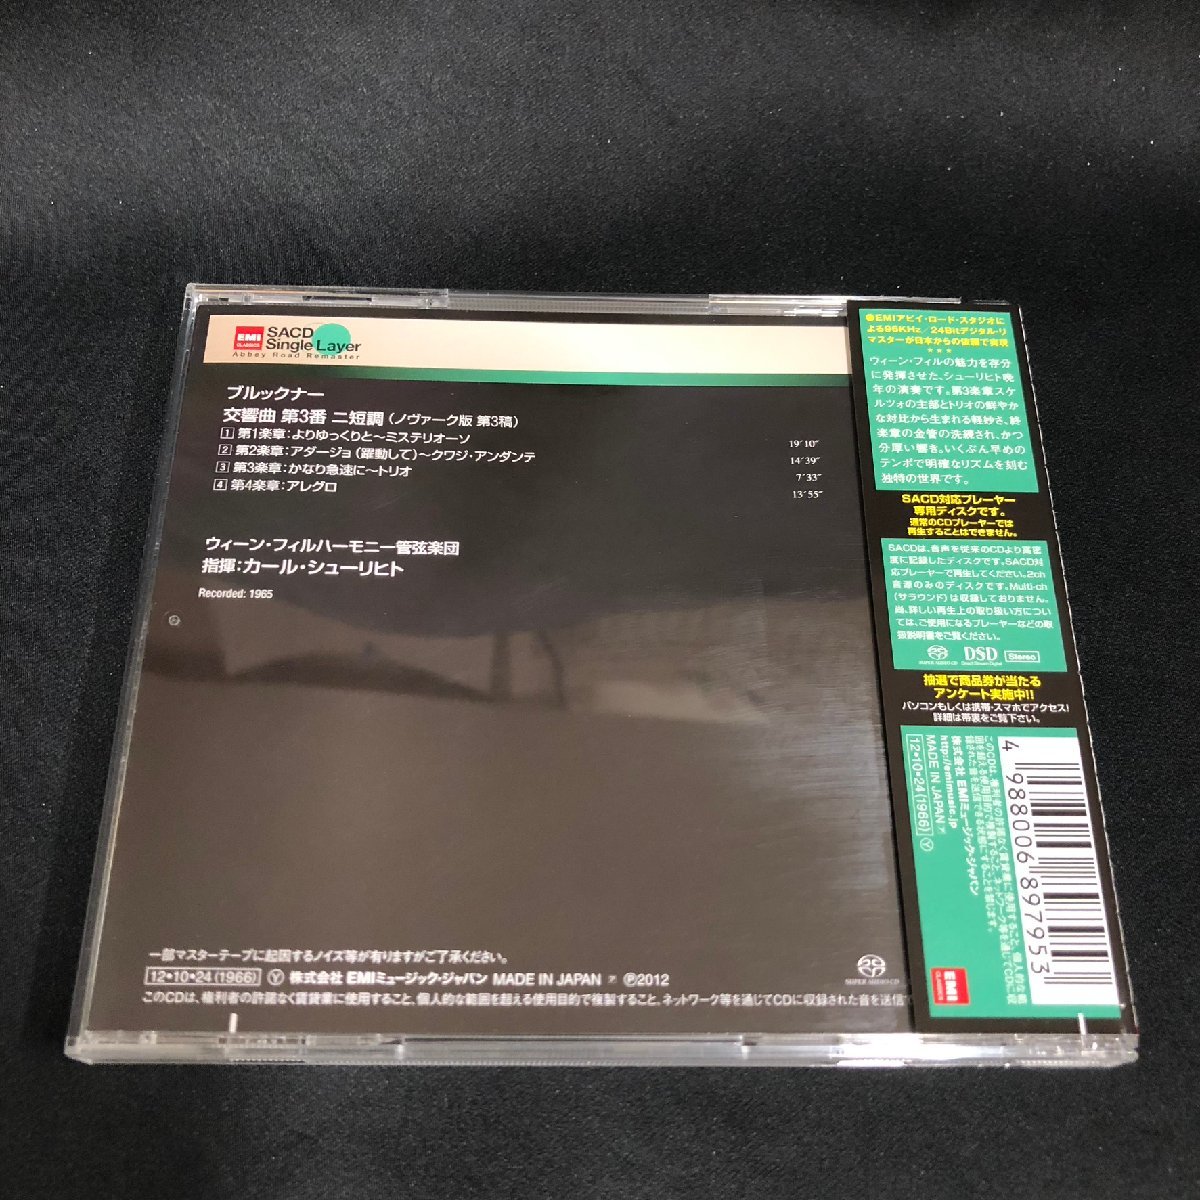 【シングルレイヤーSACD】EMI TOGE15028 シューリヒト ブルックナー 交響曲3番 SCHURICHT BRUCKNER SYMPHONY NO.3_画像2